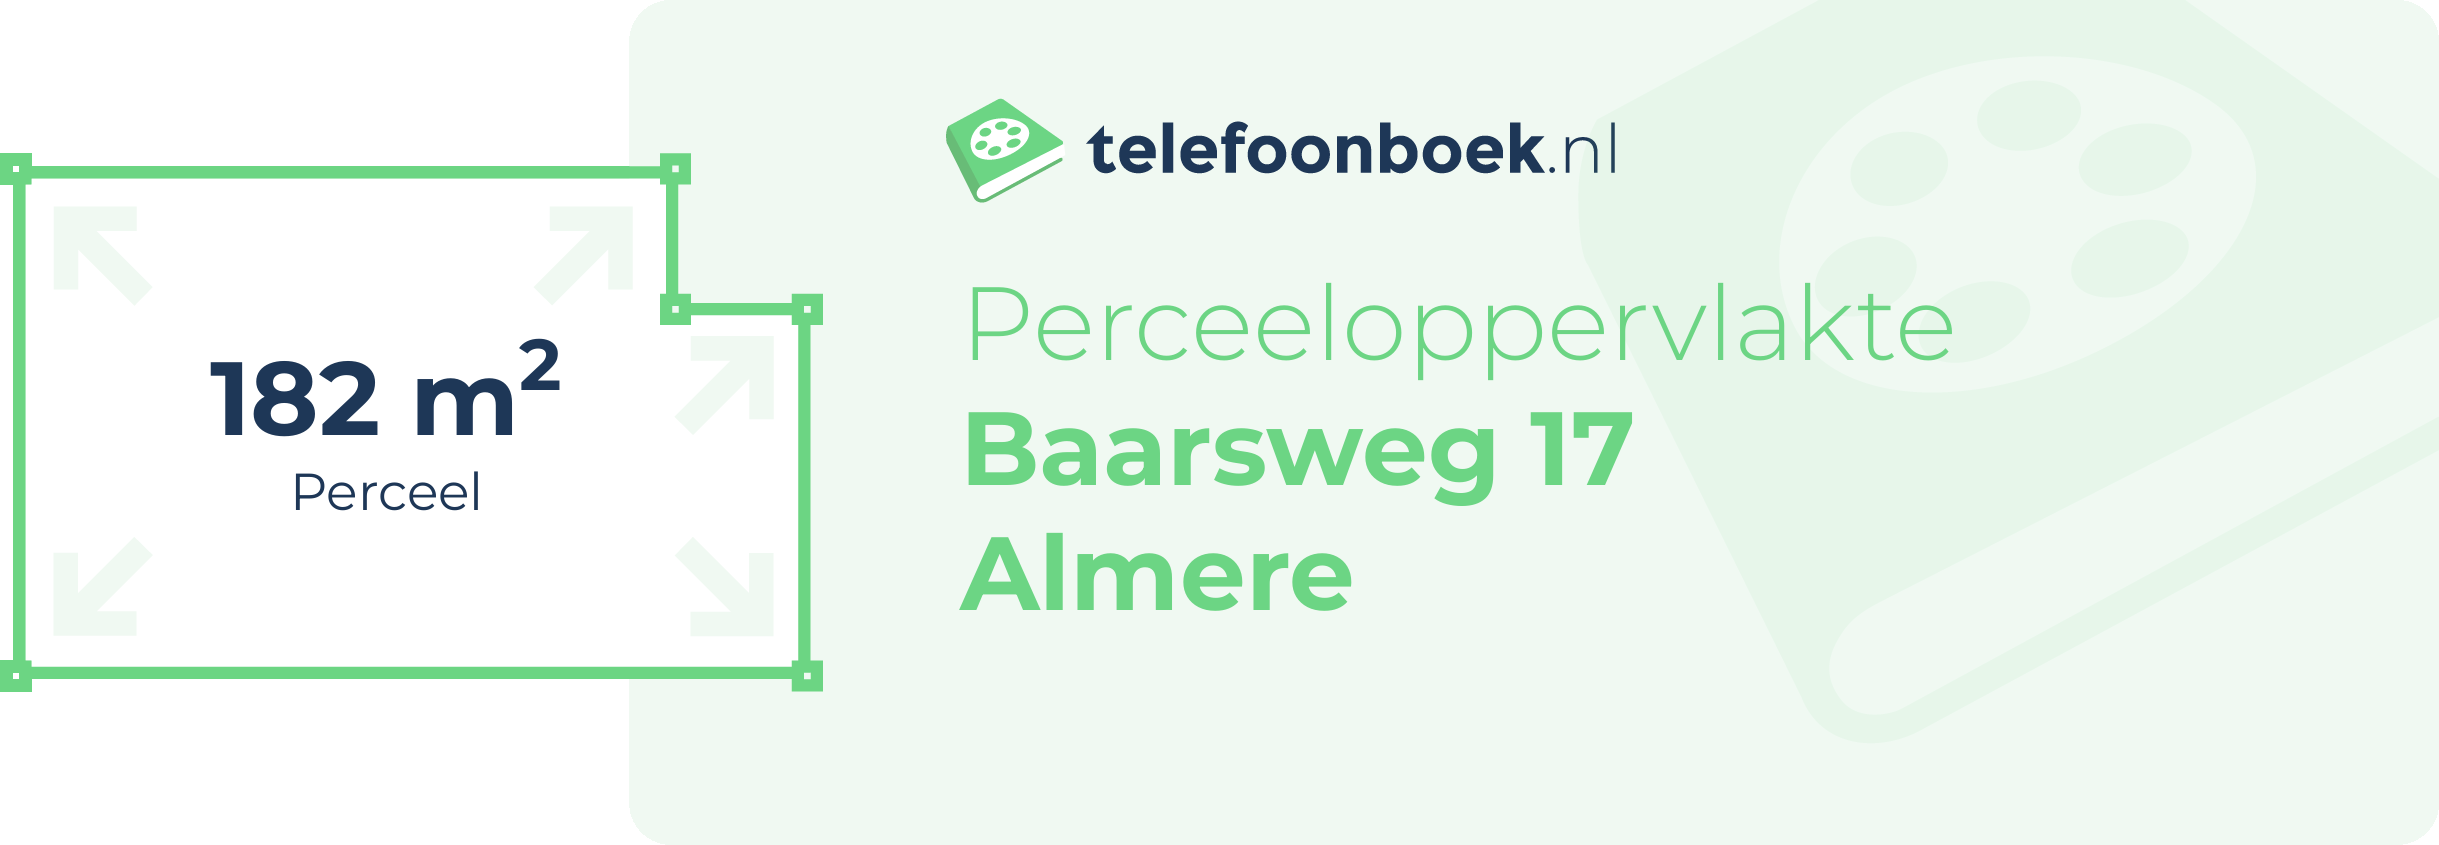 Perceeloppervlakte Baarsweg 17 Almere